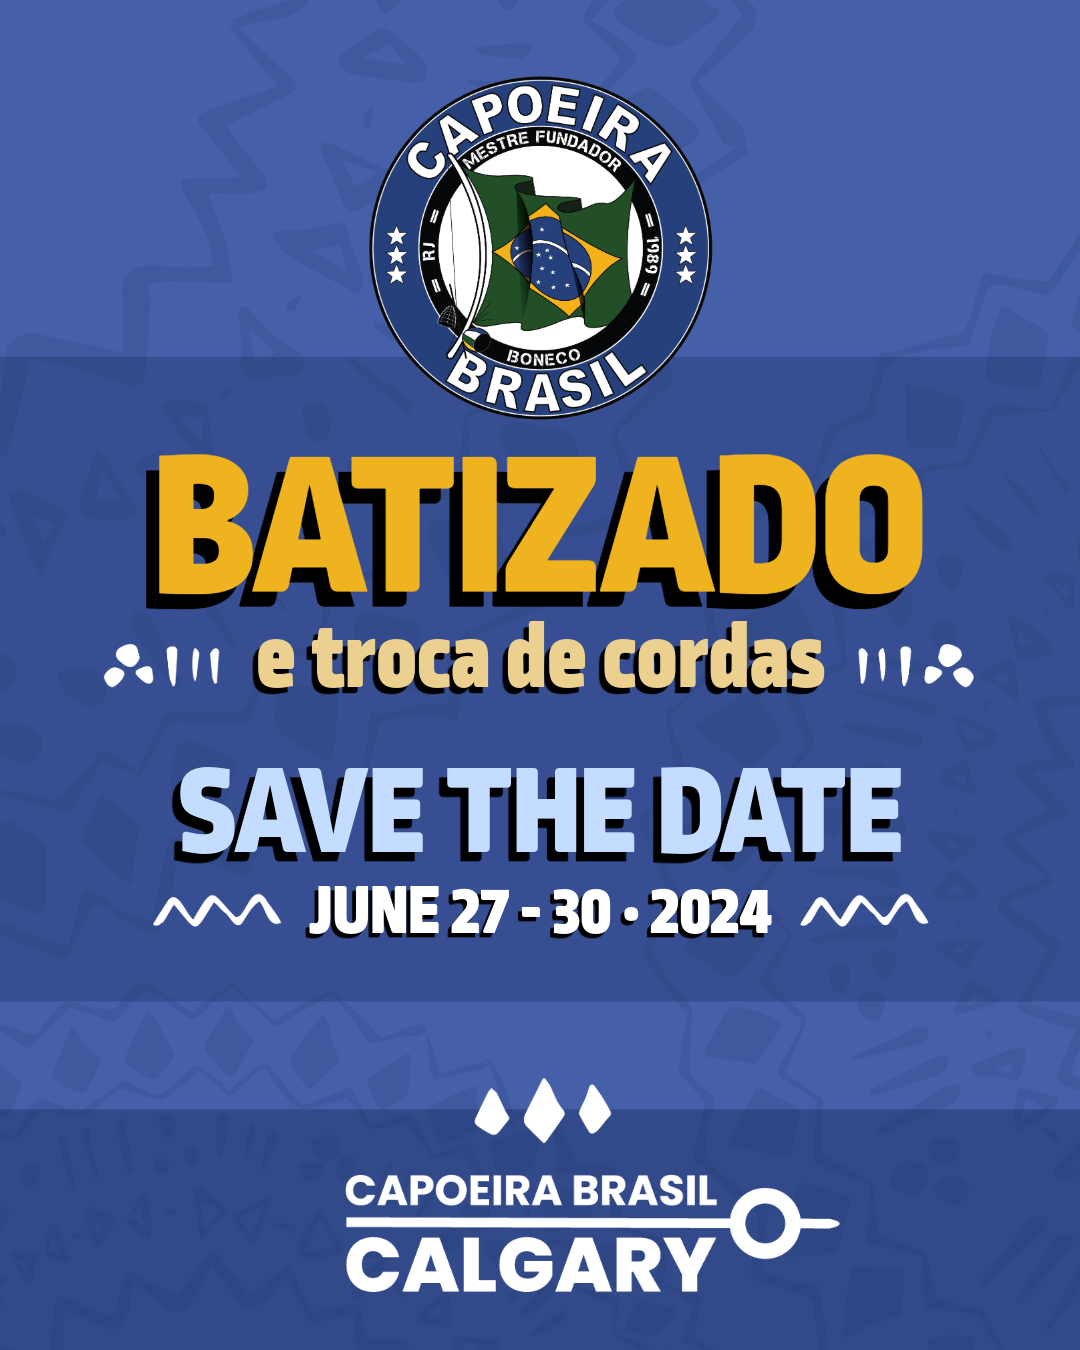 capoeira brasil calgary batizado poster 2024